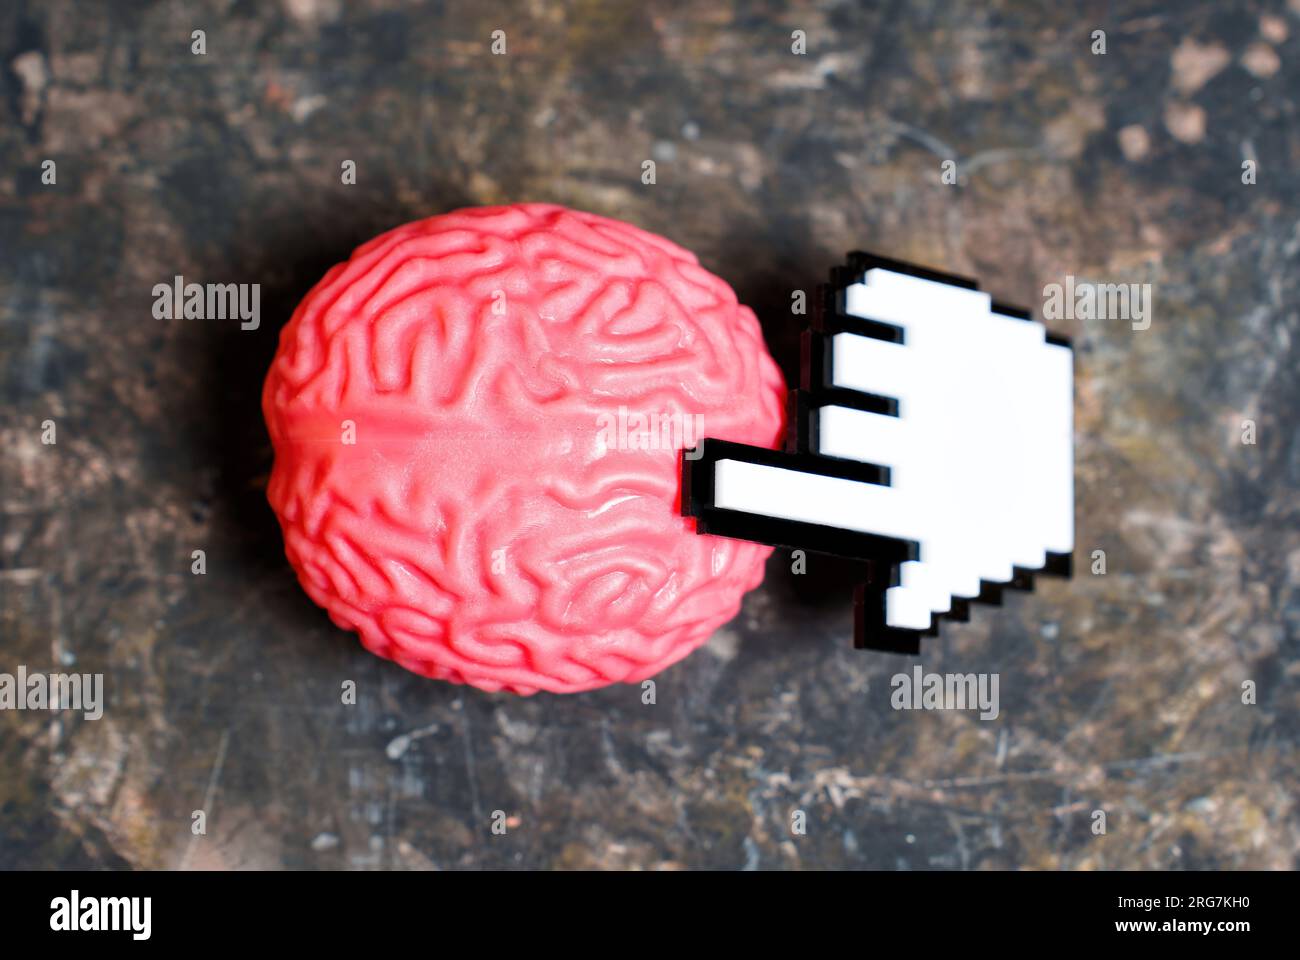 Der Plastik-Zeiger berührt ein pinkfarbenes menschliches Hirnmodell auf einem schmutzigen Hintergrund. Stockfoto